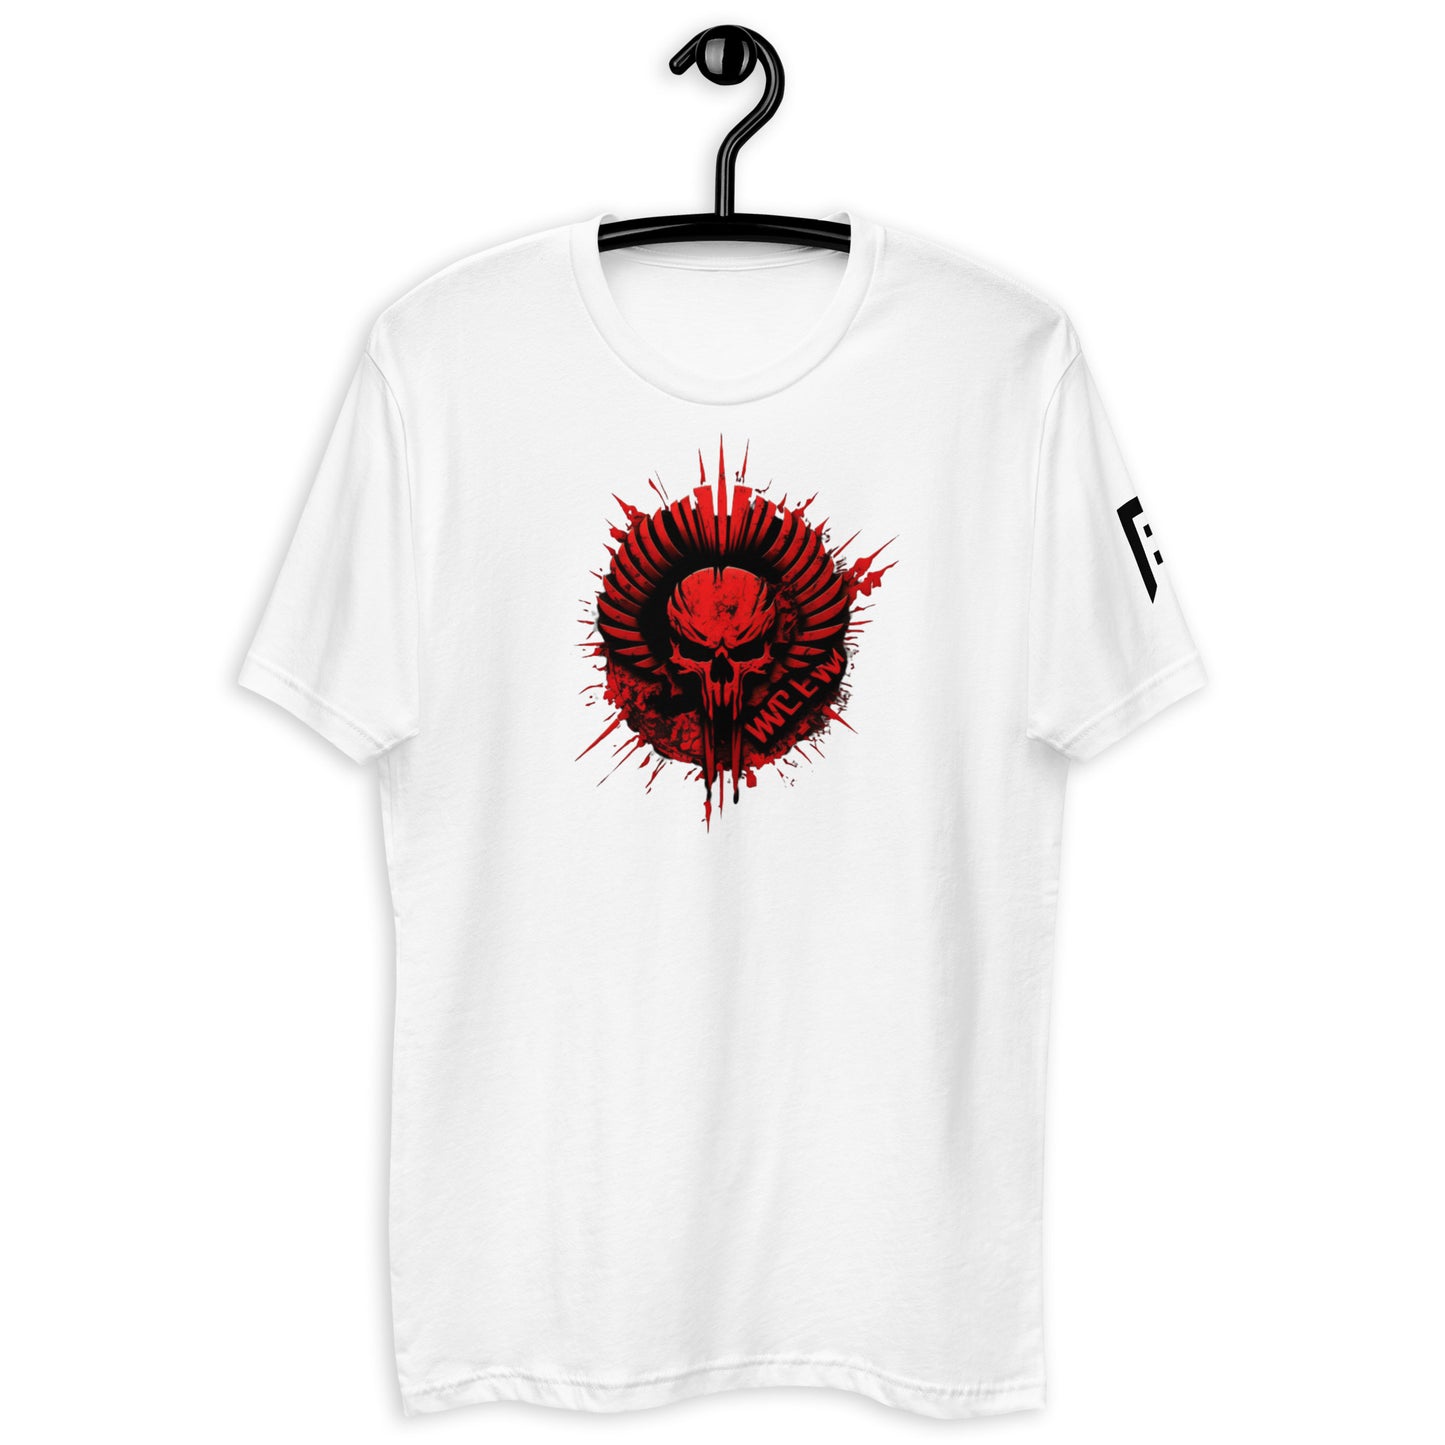 Red Weapon Skull Crusher T-shirt